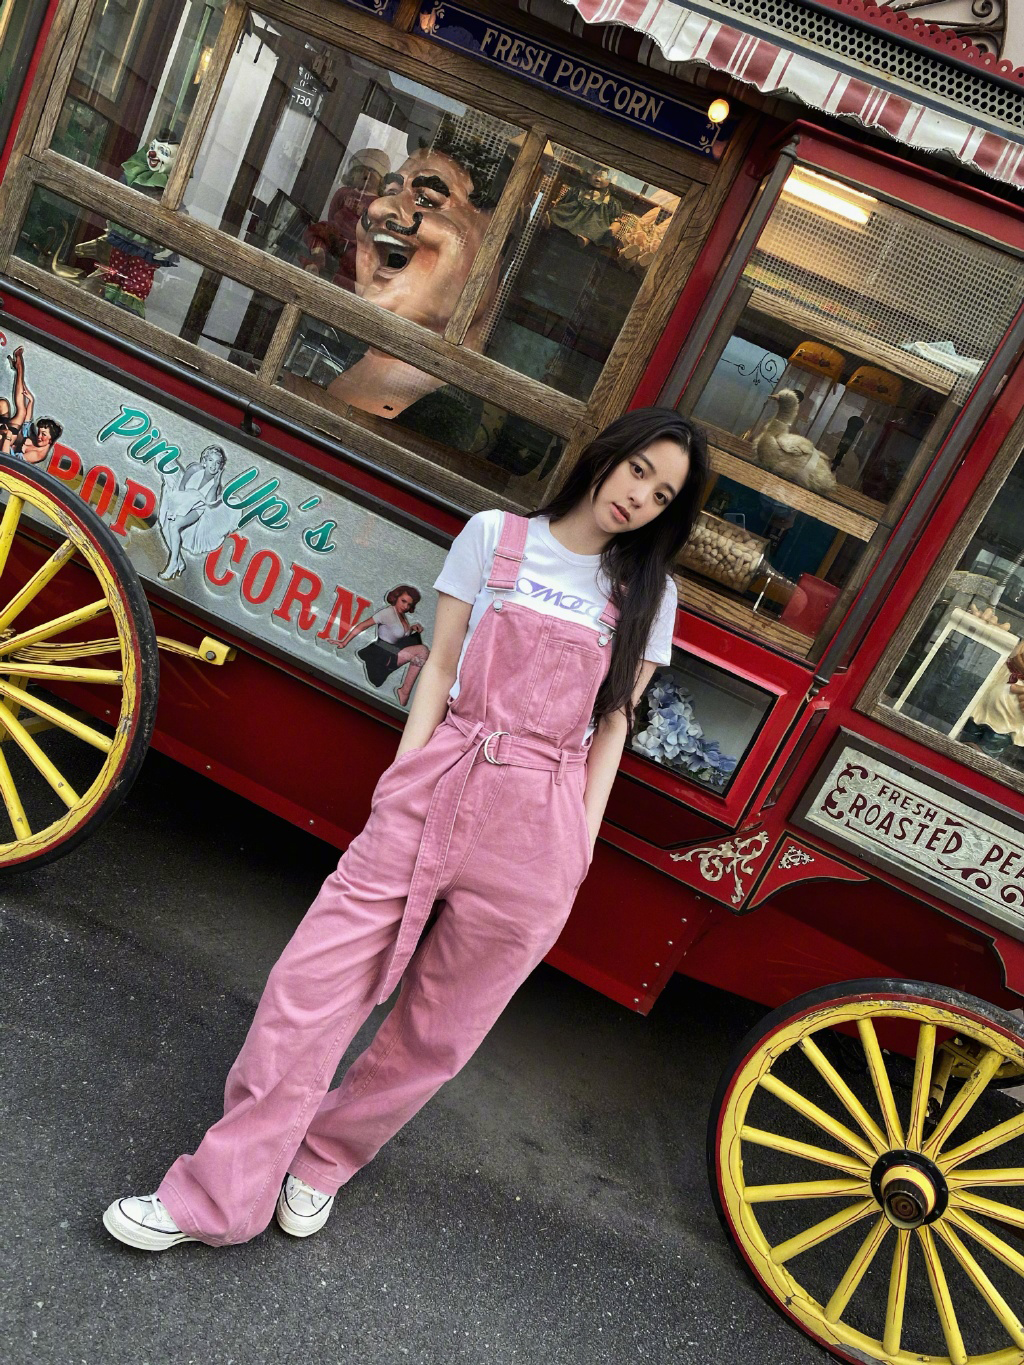 欧阳娜娜可爱粉色吊带连体牛仔裤街拍生活照片